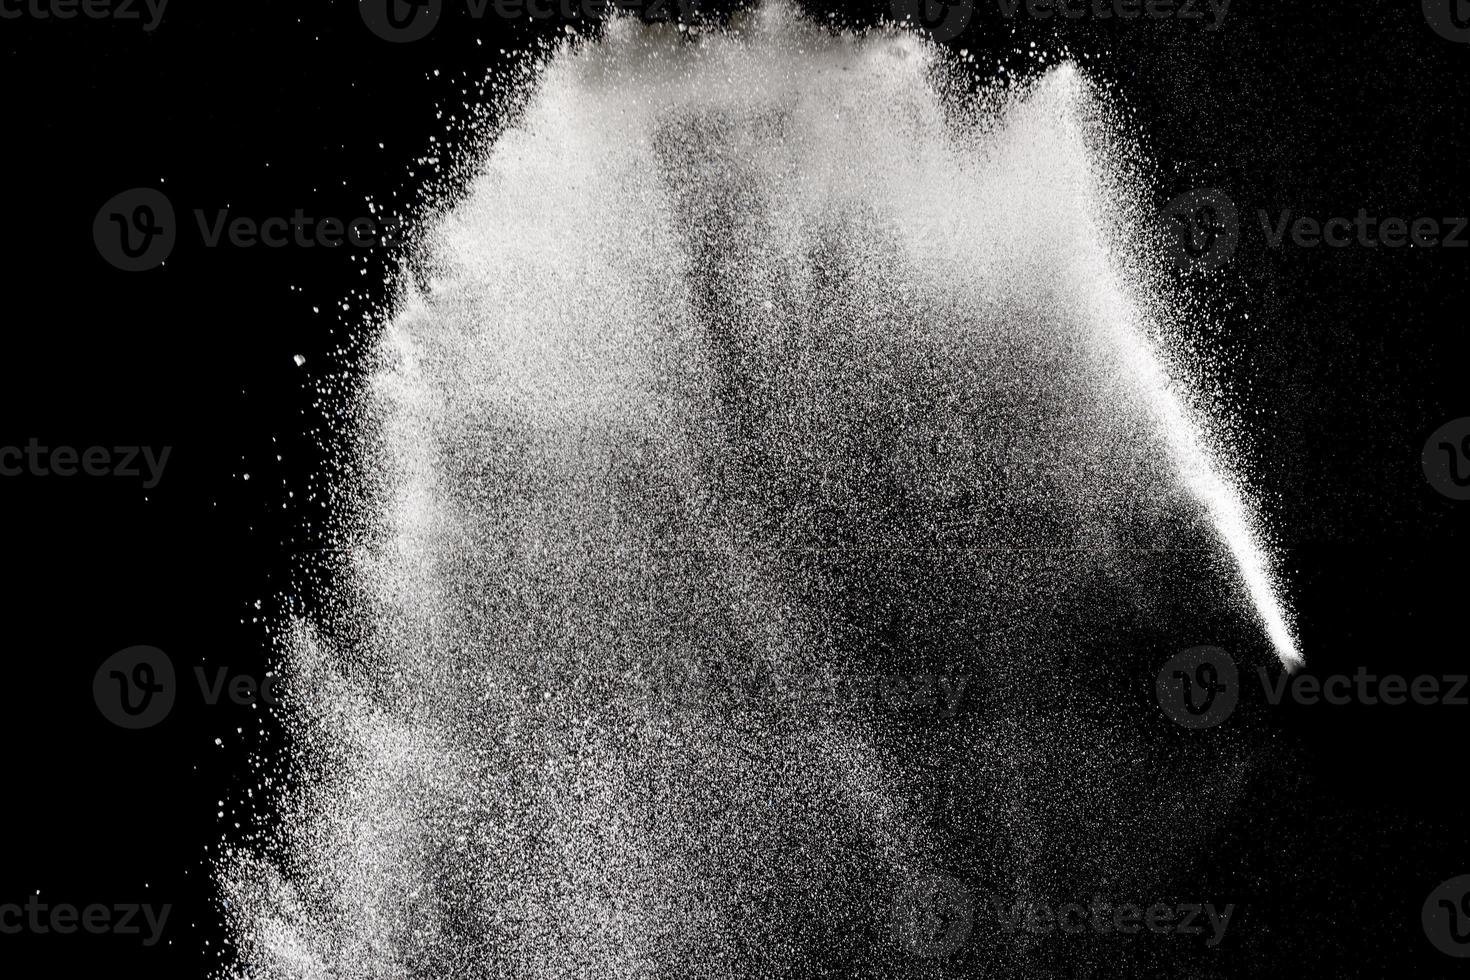 formas bizarras de nuvem de explosão de pó branco contra fundo preto. foto